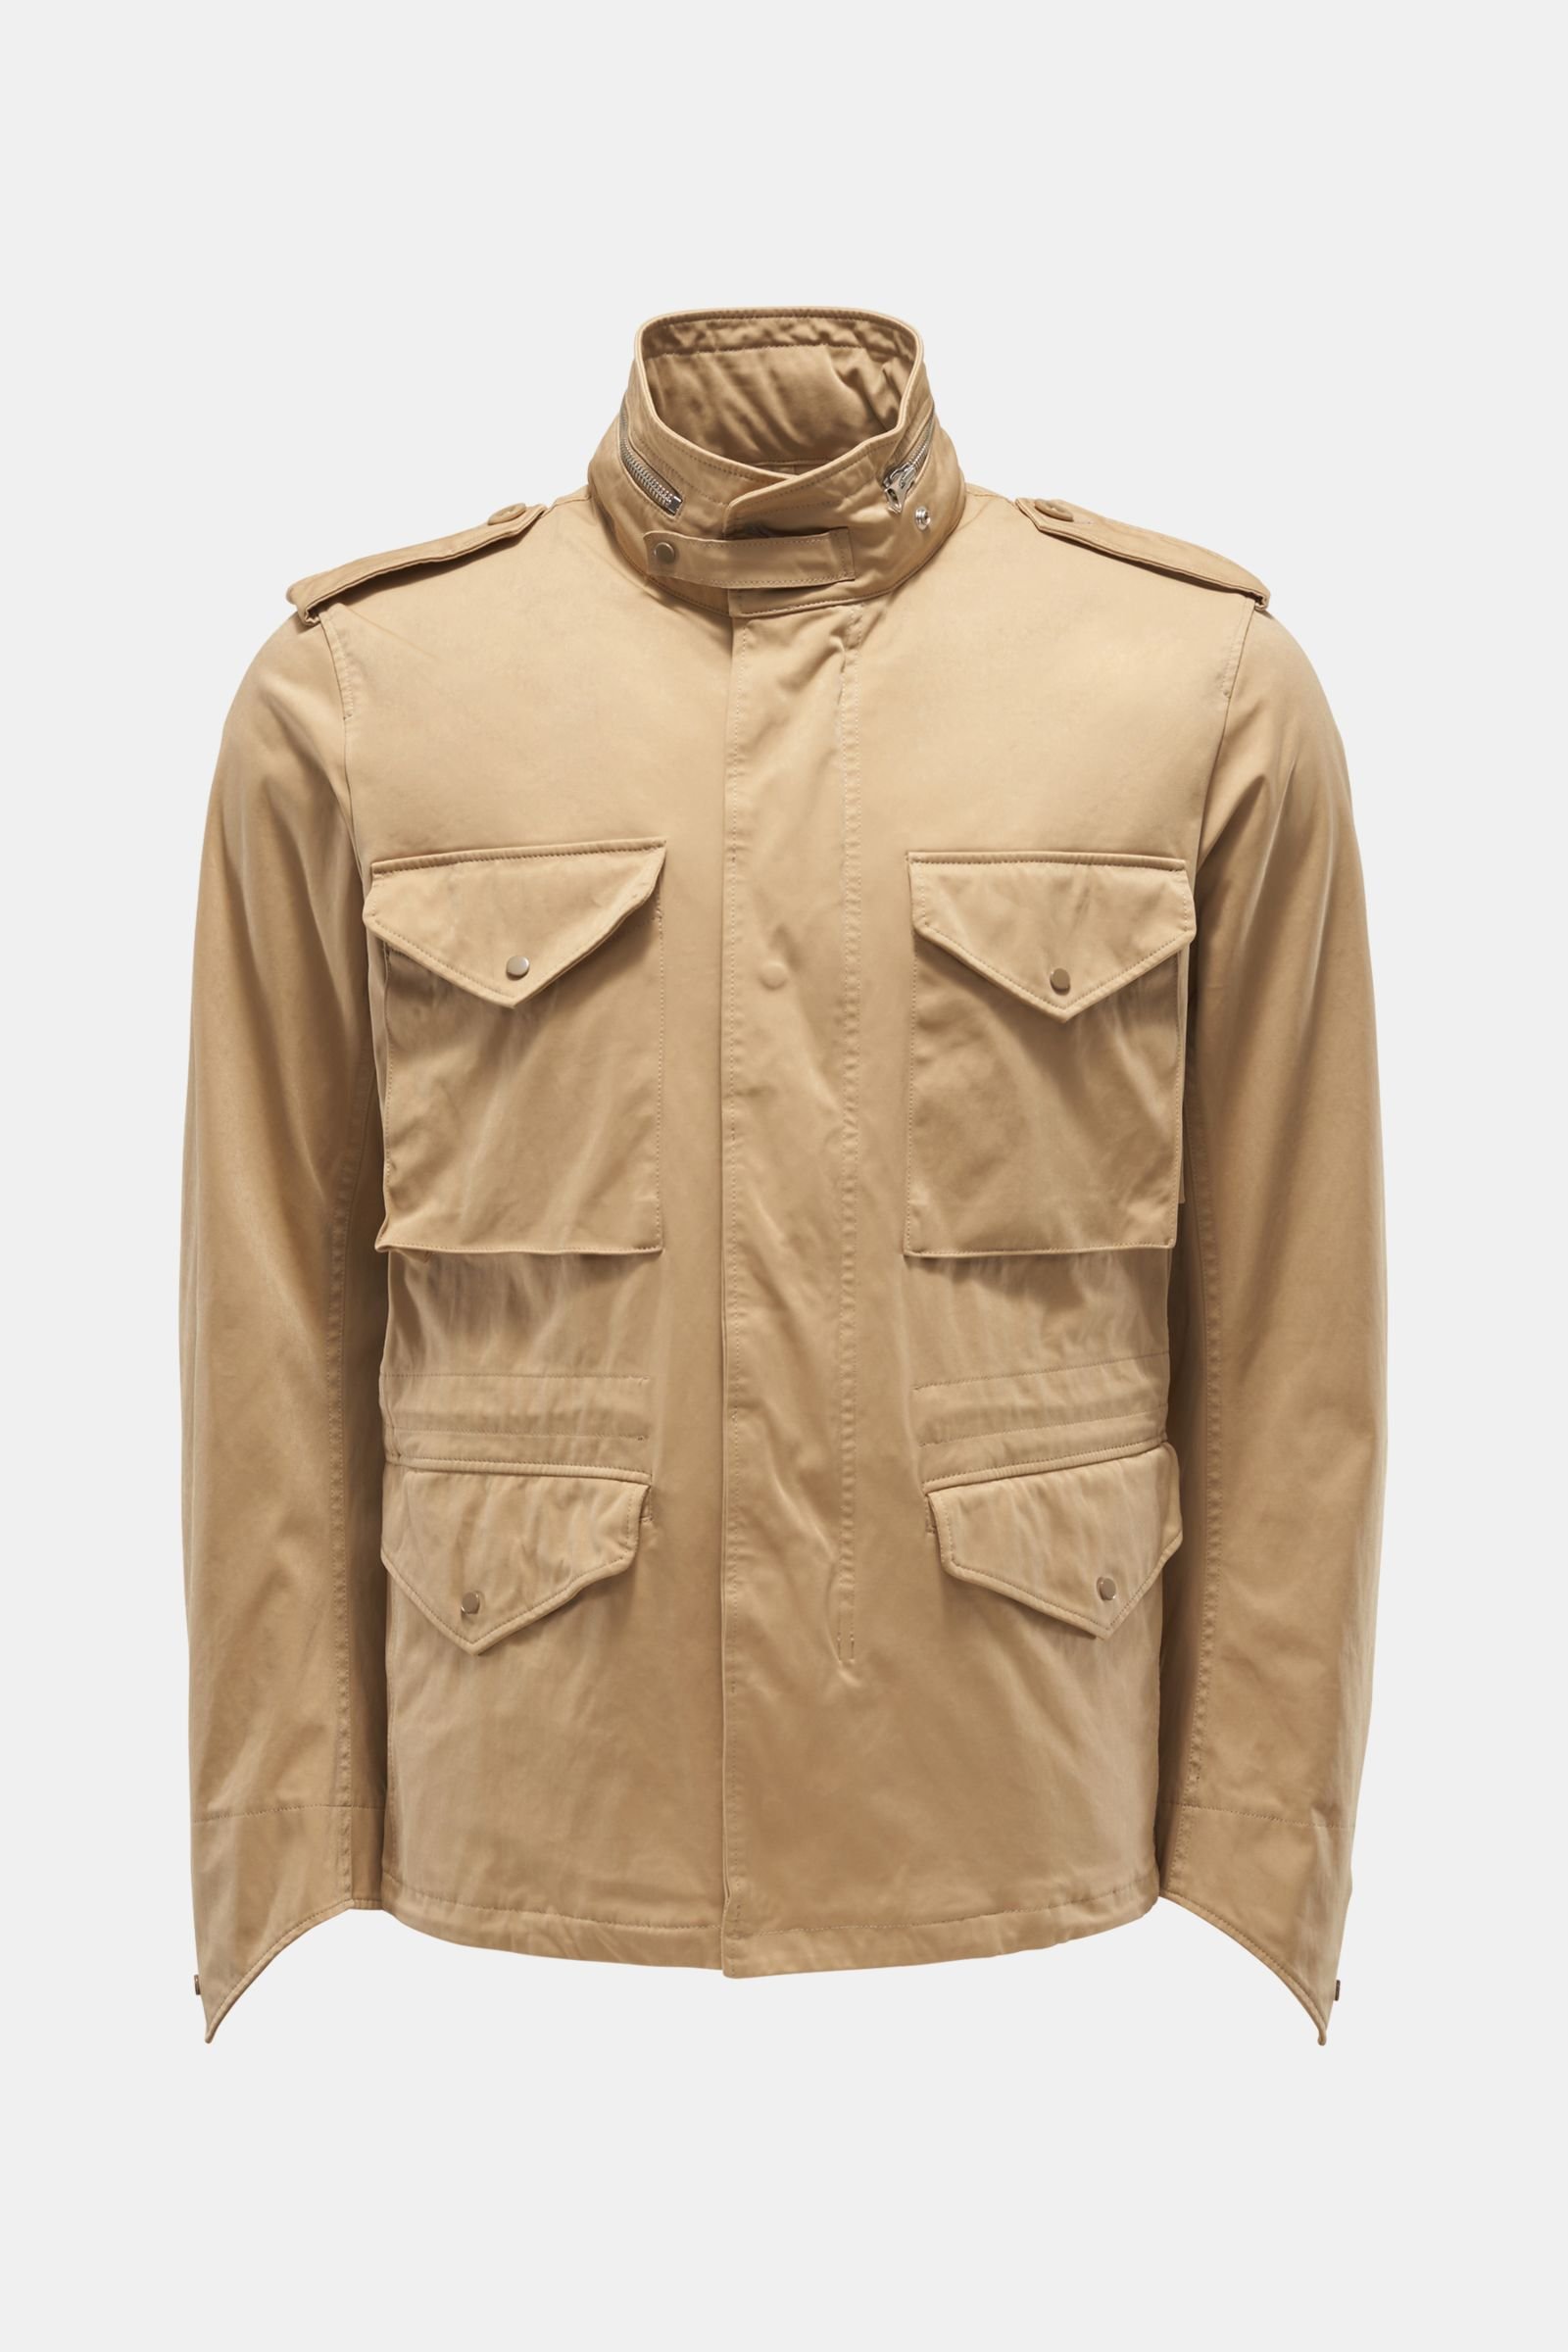 Field jacket ‘Short Field jacket’ light brown